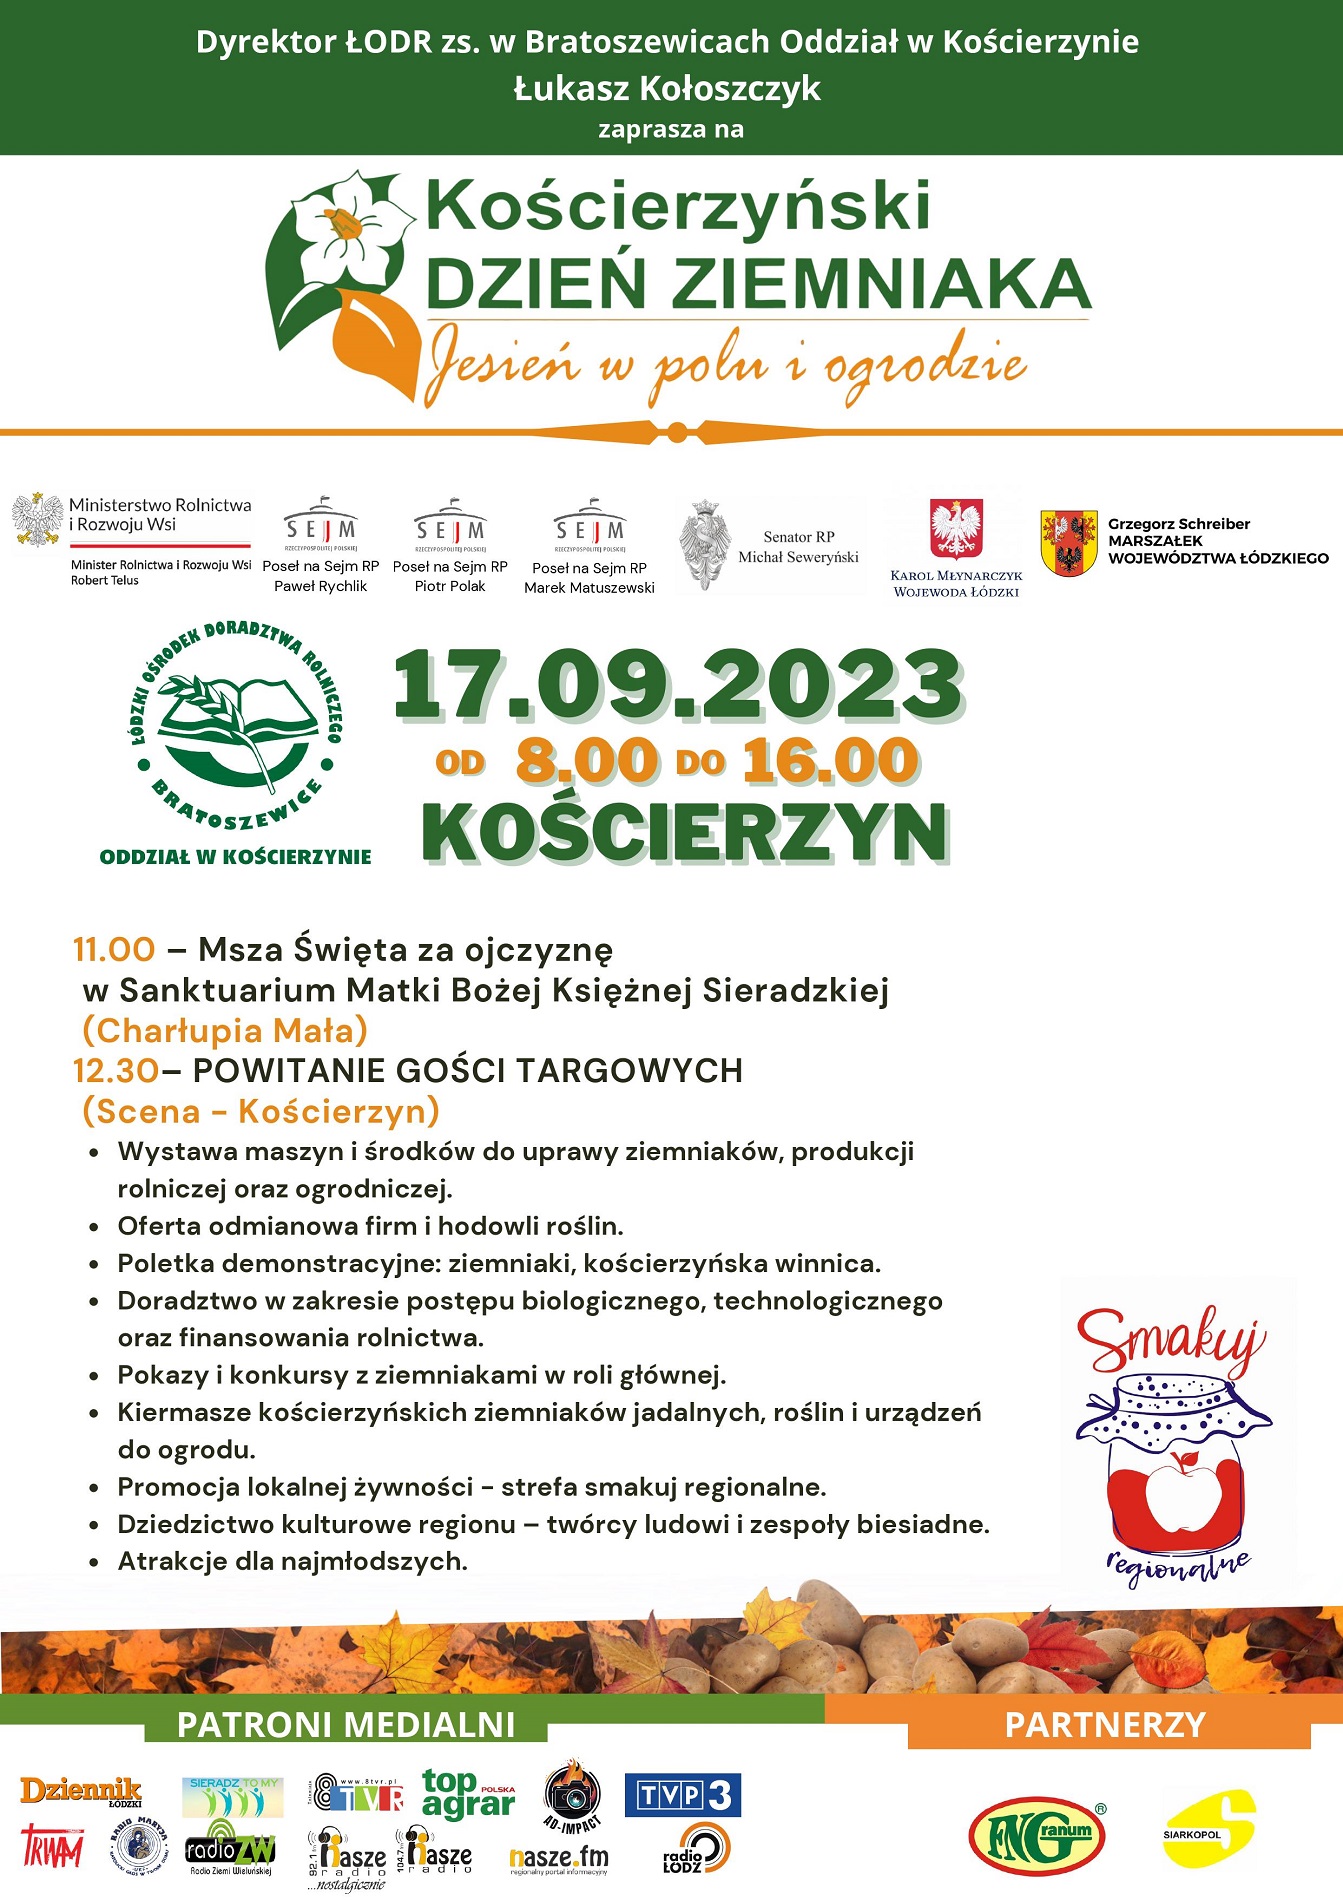 Plakat - zaproszenie na Kościerzyński Dzień Ziemniaka w dn. 17 września 2023 r od godz. 8.00